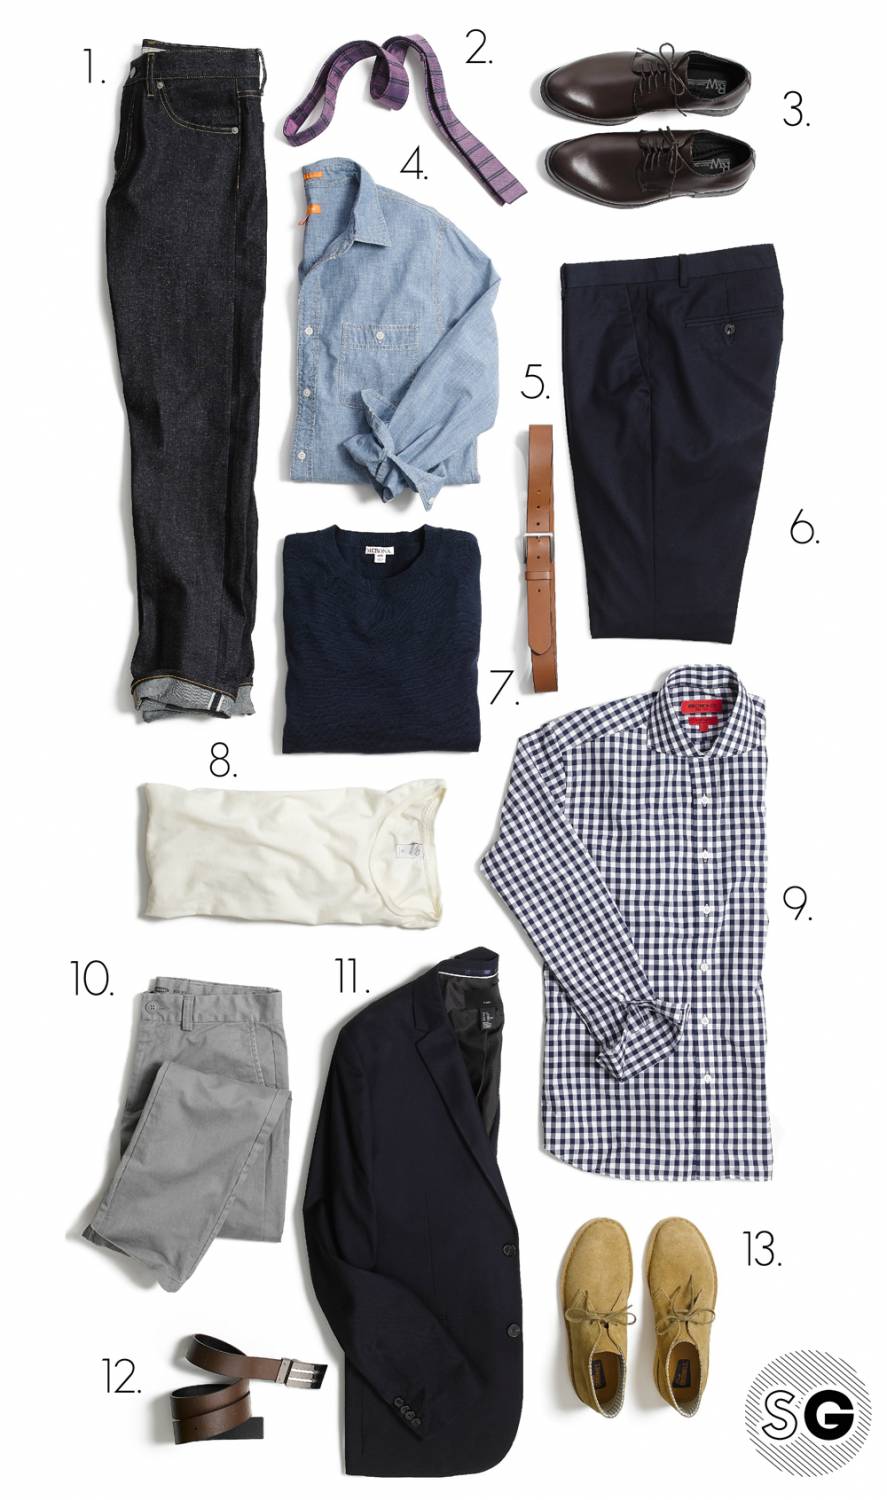 How to Build a $500 Post-Grad Men's Wardrobe